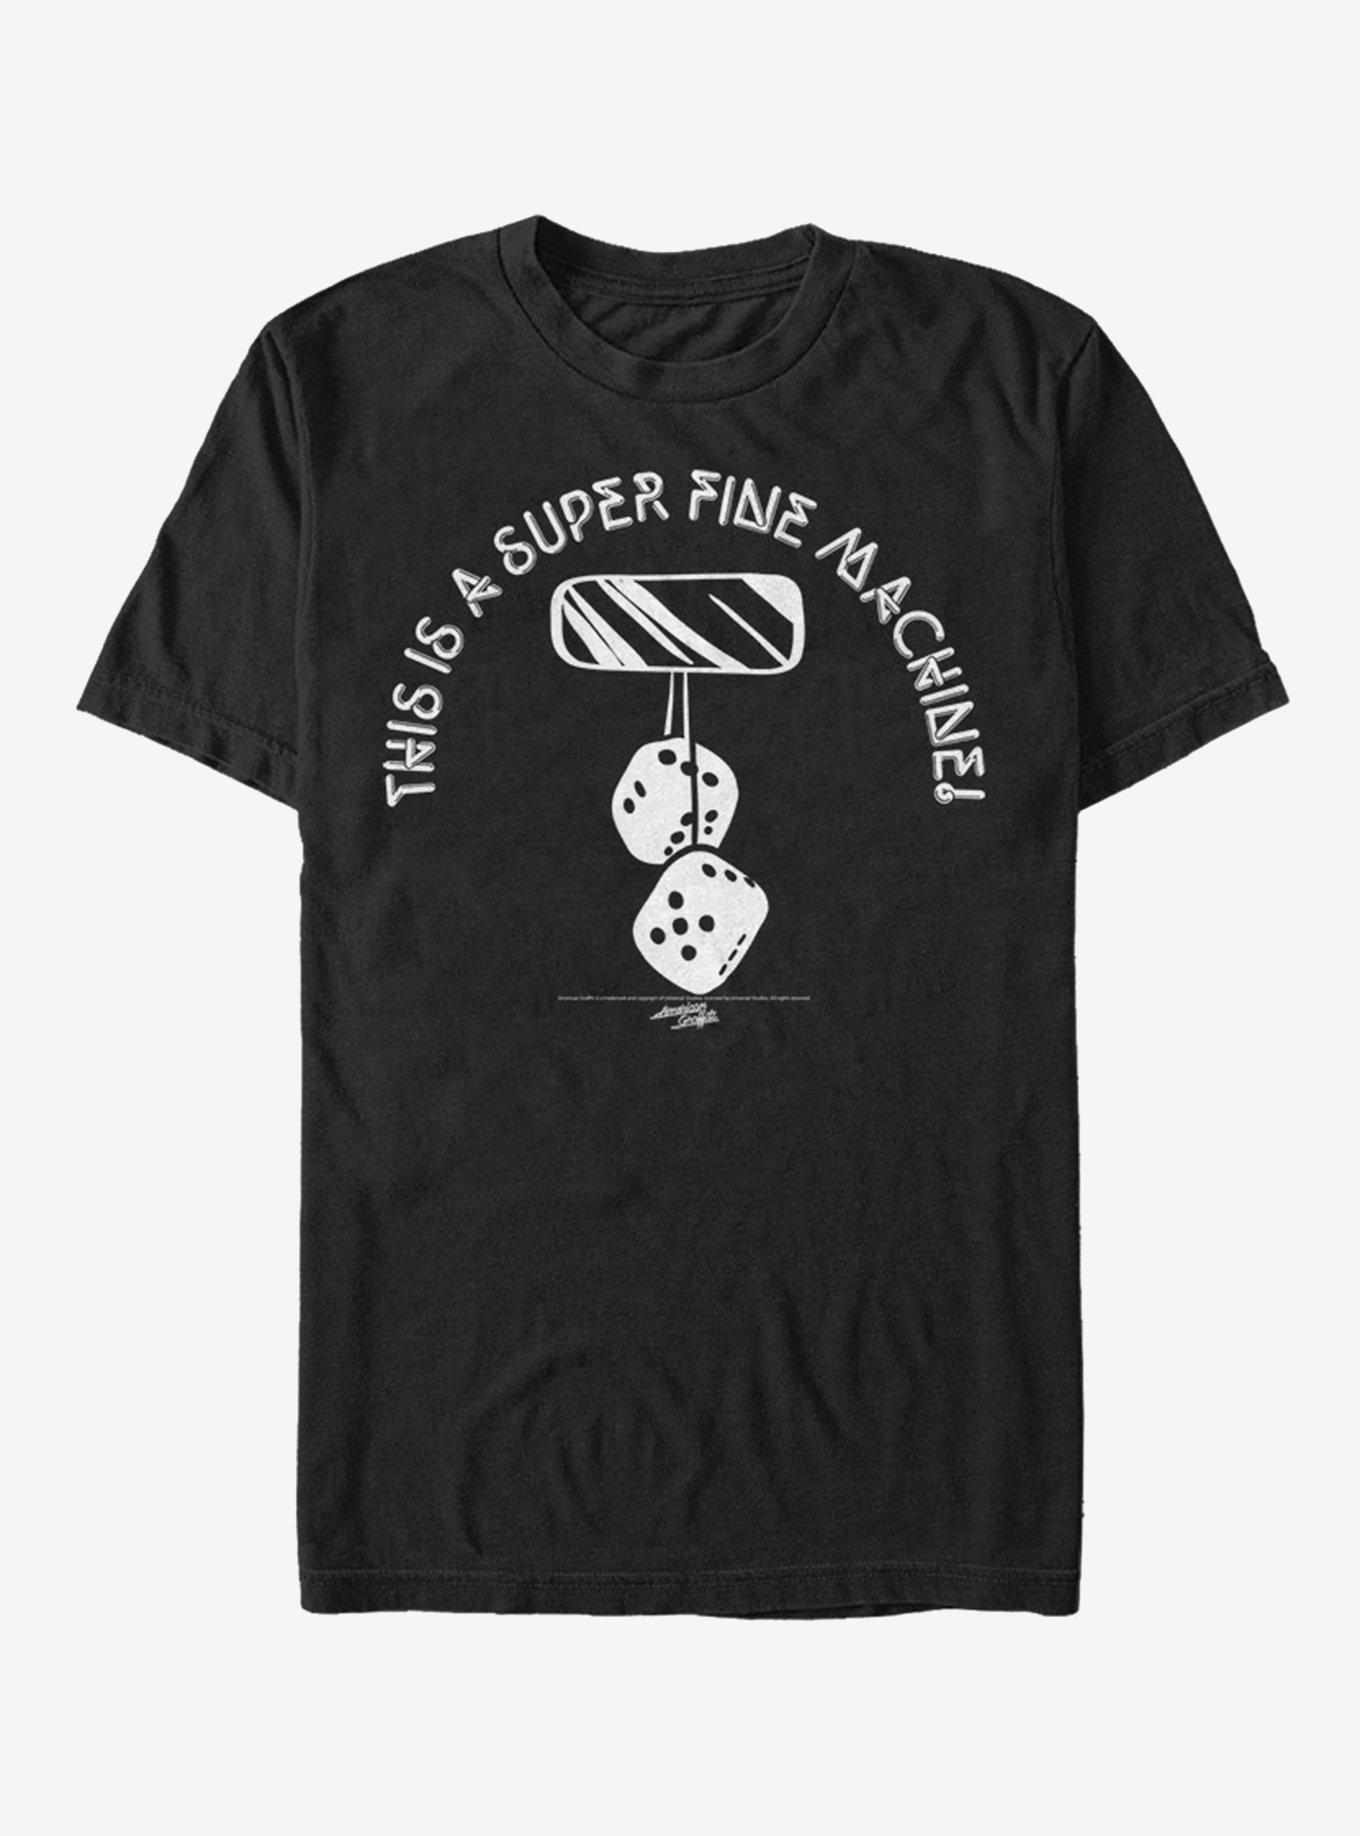 American Graffiti Super Fine Machine T-Shirt, BLACK, hi-res